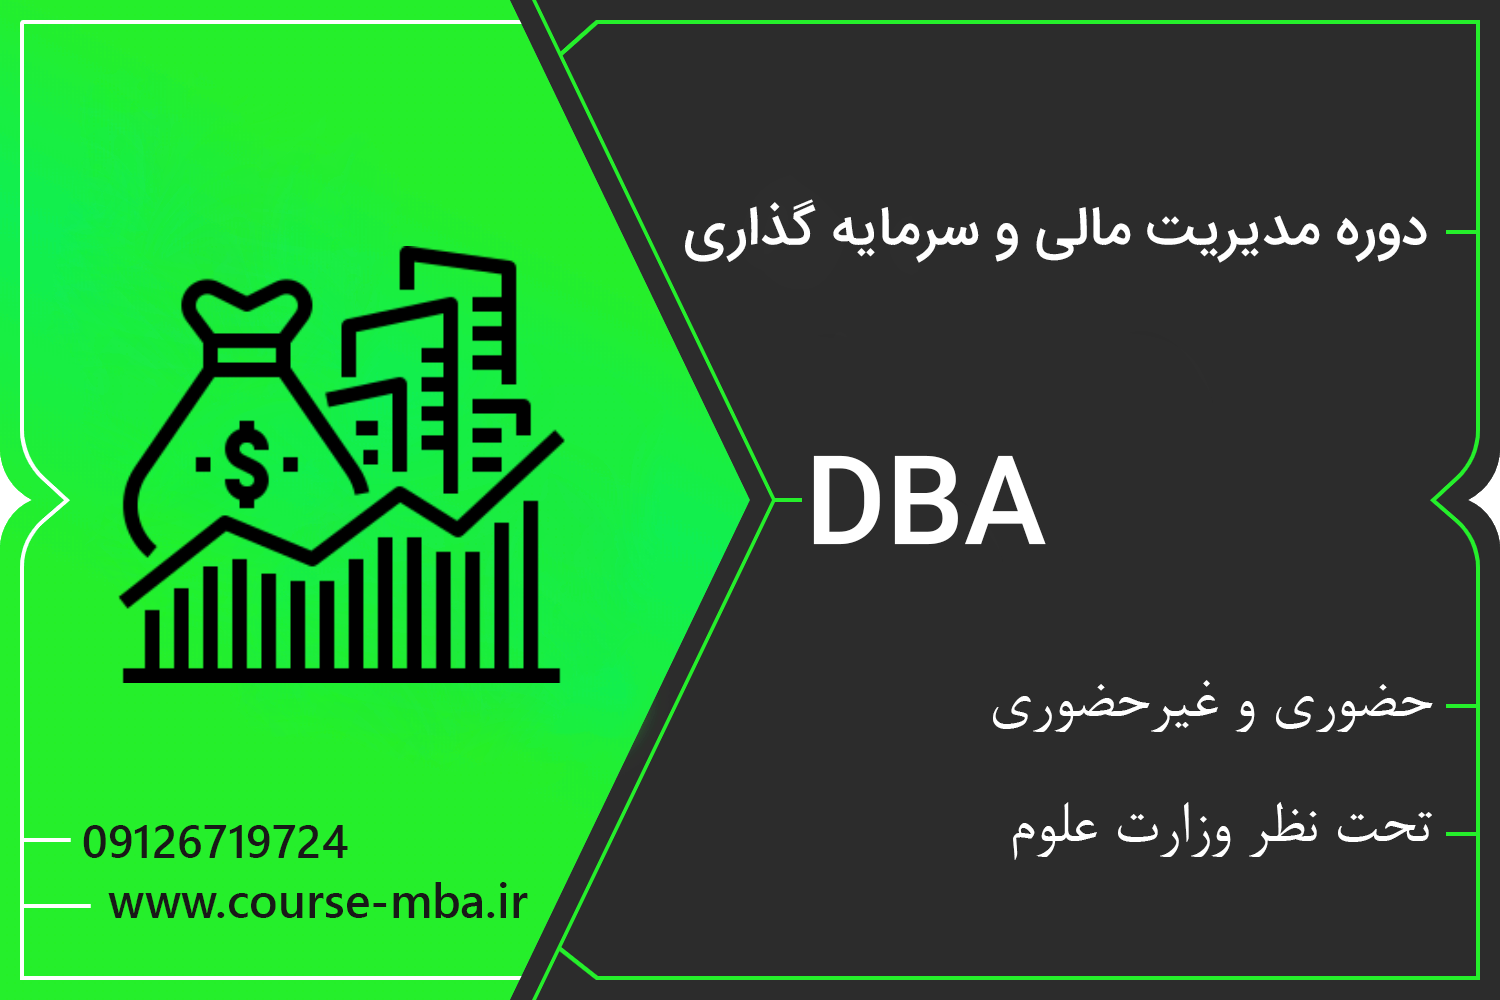 دوره DBA مدیریت مالی و سرمایه گذاری | مدرک DBA مدیریت مالی و سرمایه گذاری